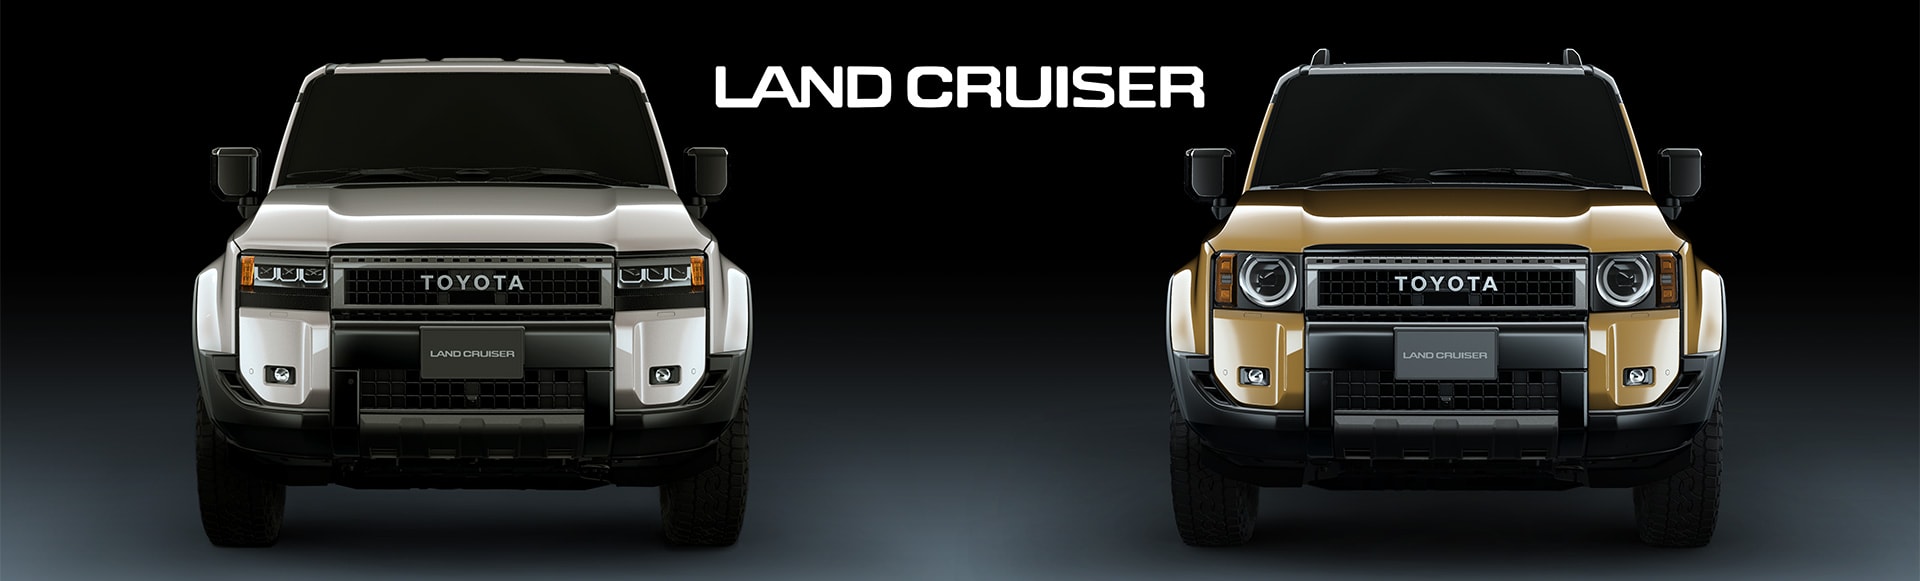 Land Cruiser 300